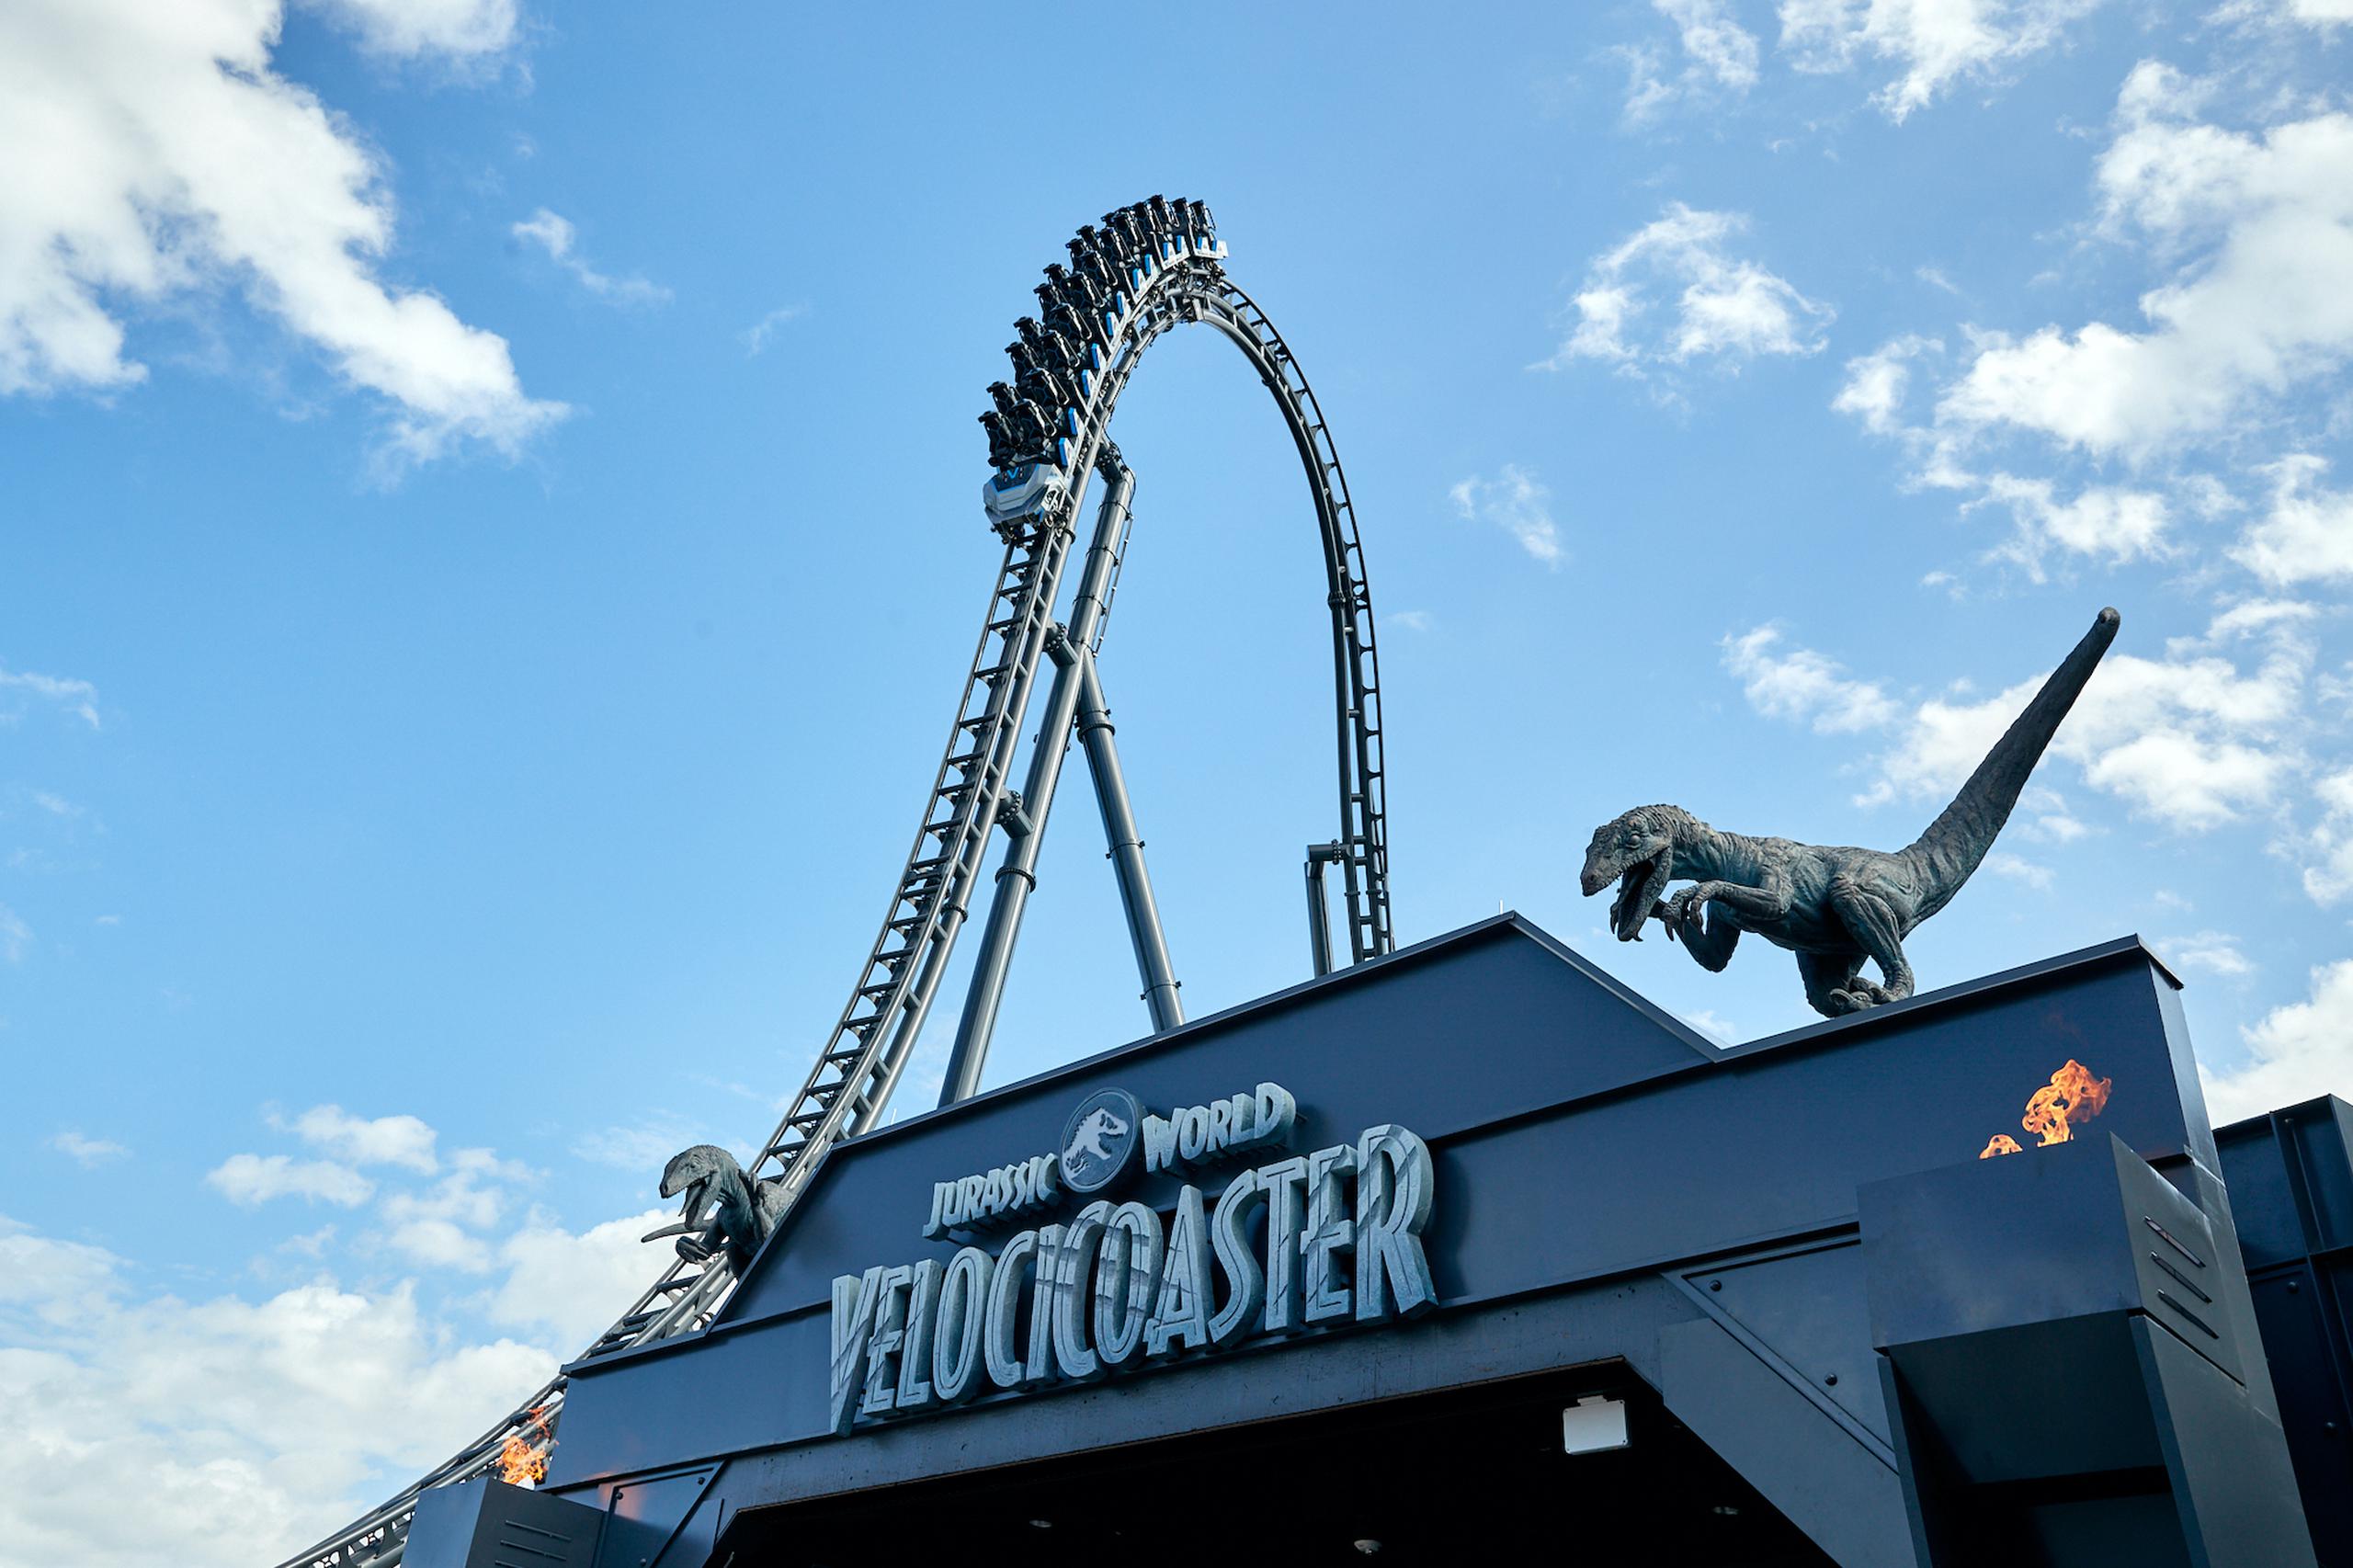 Jurassic World Velocicoaster tiene una cima que impulsa a los viajeros a 155 pies en el aire y luego inmediatamente a una caída de 80 grados, la más pronunciada de Universal hasta ahora.